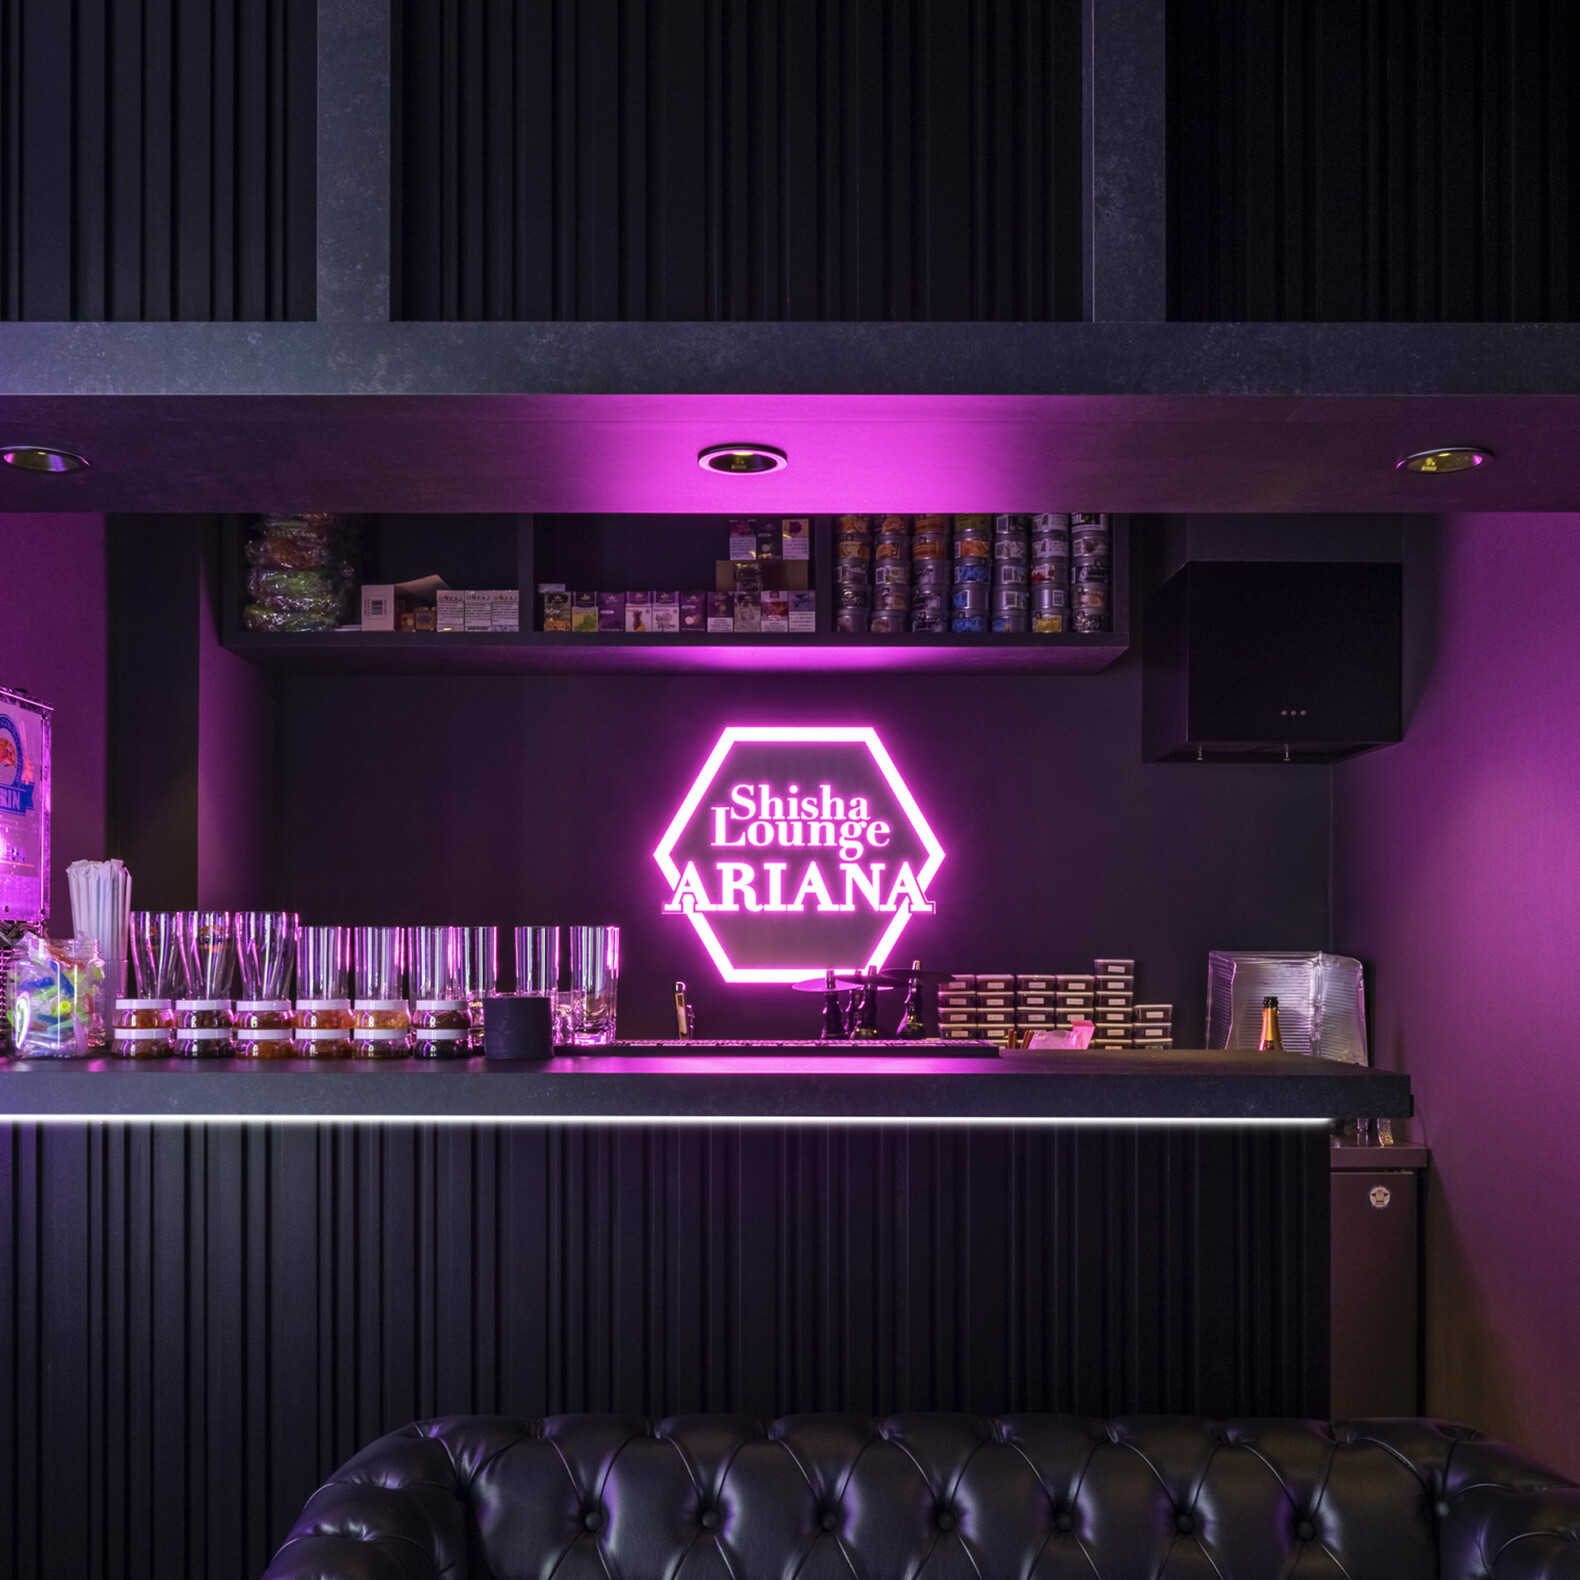 Shisha Lounge ARIANA | GARAN デザイン・設計実績